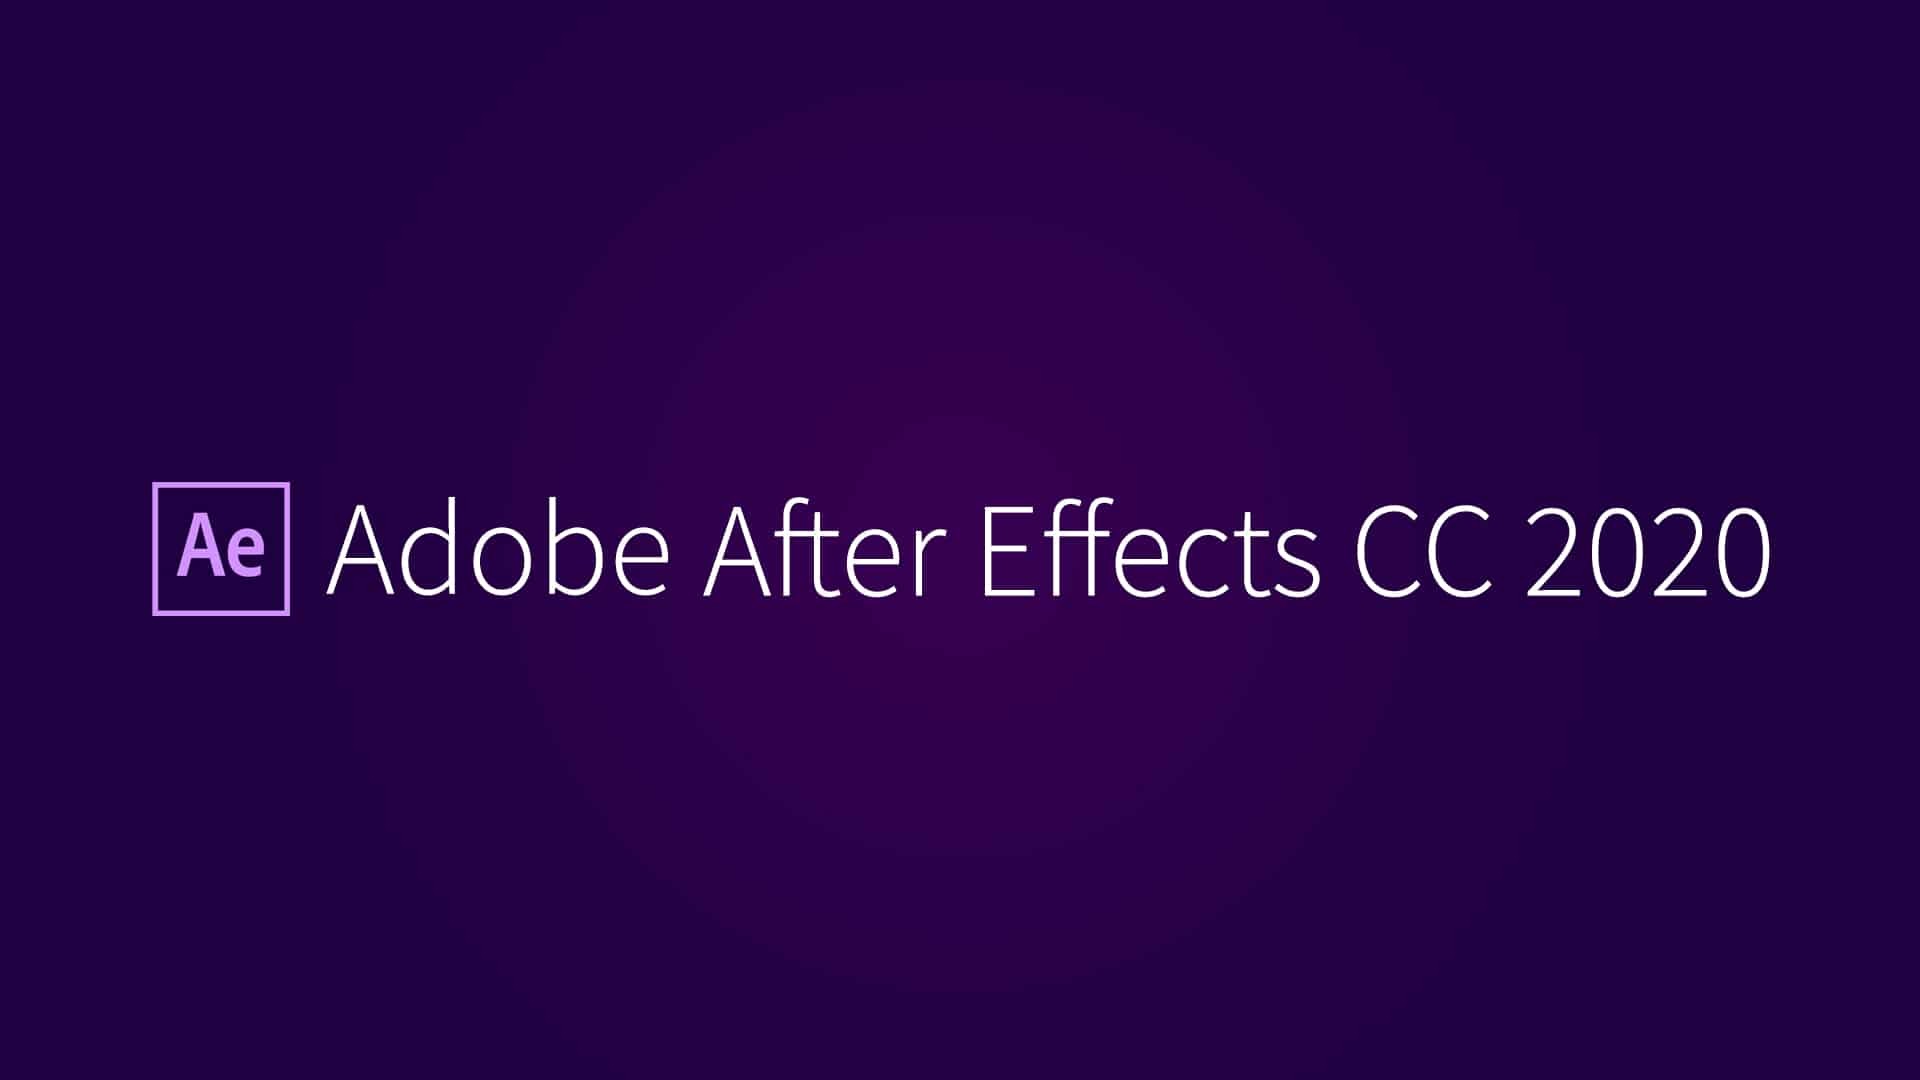 2021.2.9 更新 After Effects 2020 (17.7.0.45) 本版为AE 2020最终版本